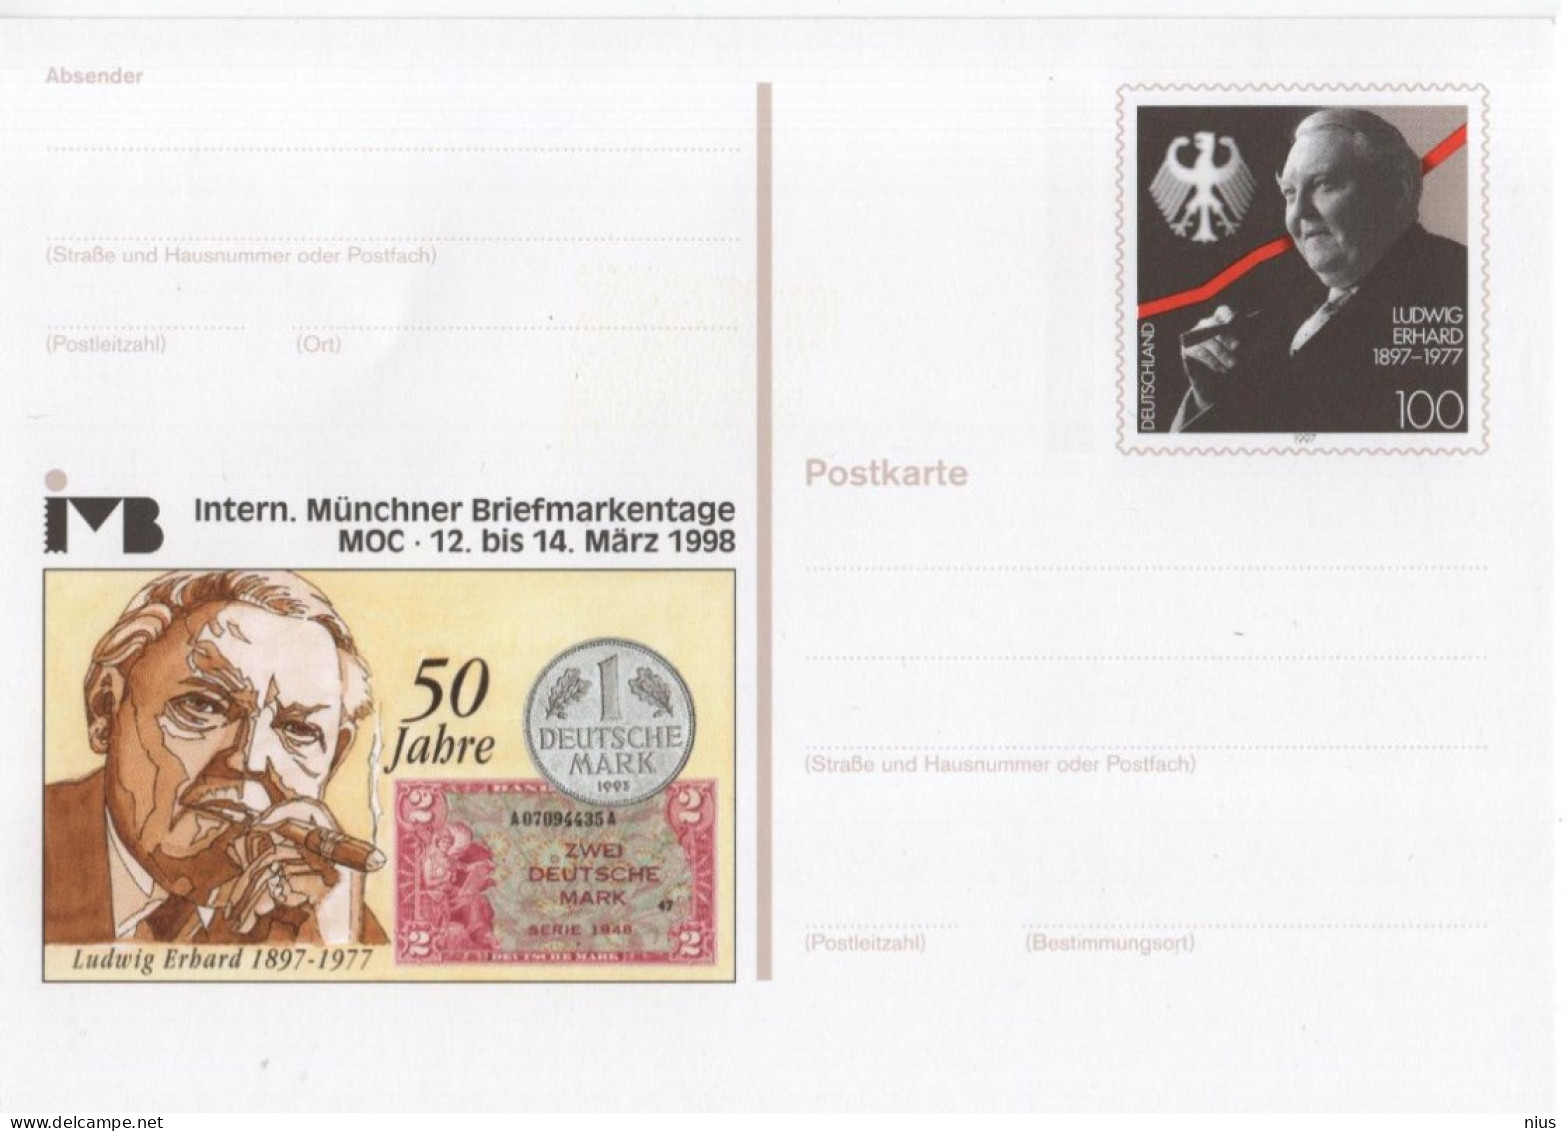 Germany Deutschland 1998 Ludwig Erhard, Politician Economist, Briefmarkentage Munchen - Postcards - Mint